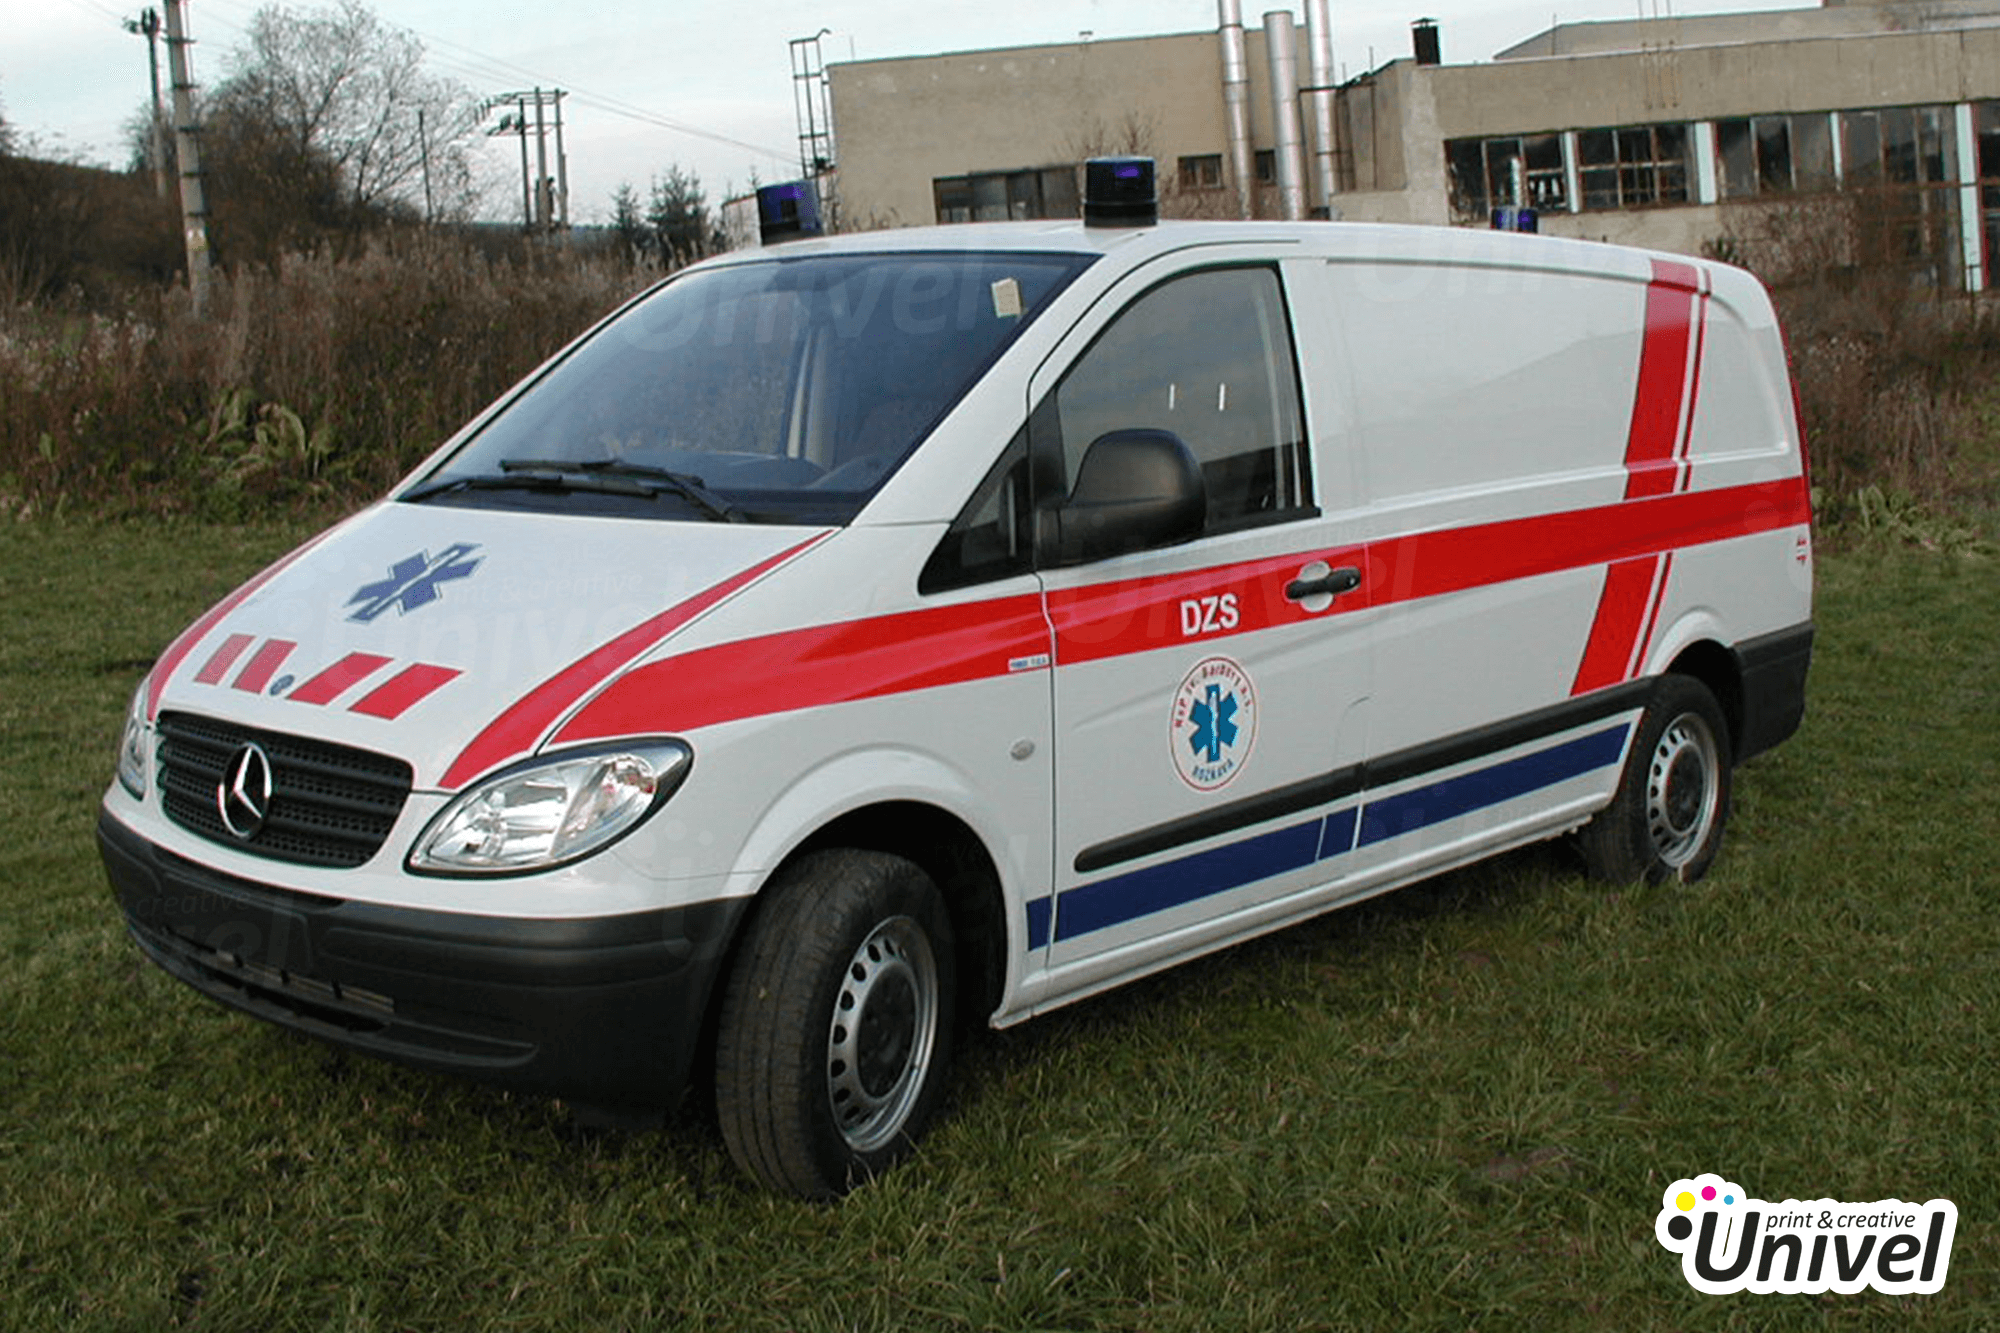 Univel 2021 - Záchranna zdravotná služba sanitka čiastočný polep auta - pohľad z boku auta